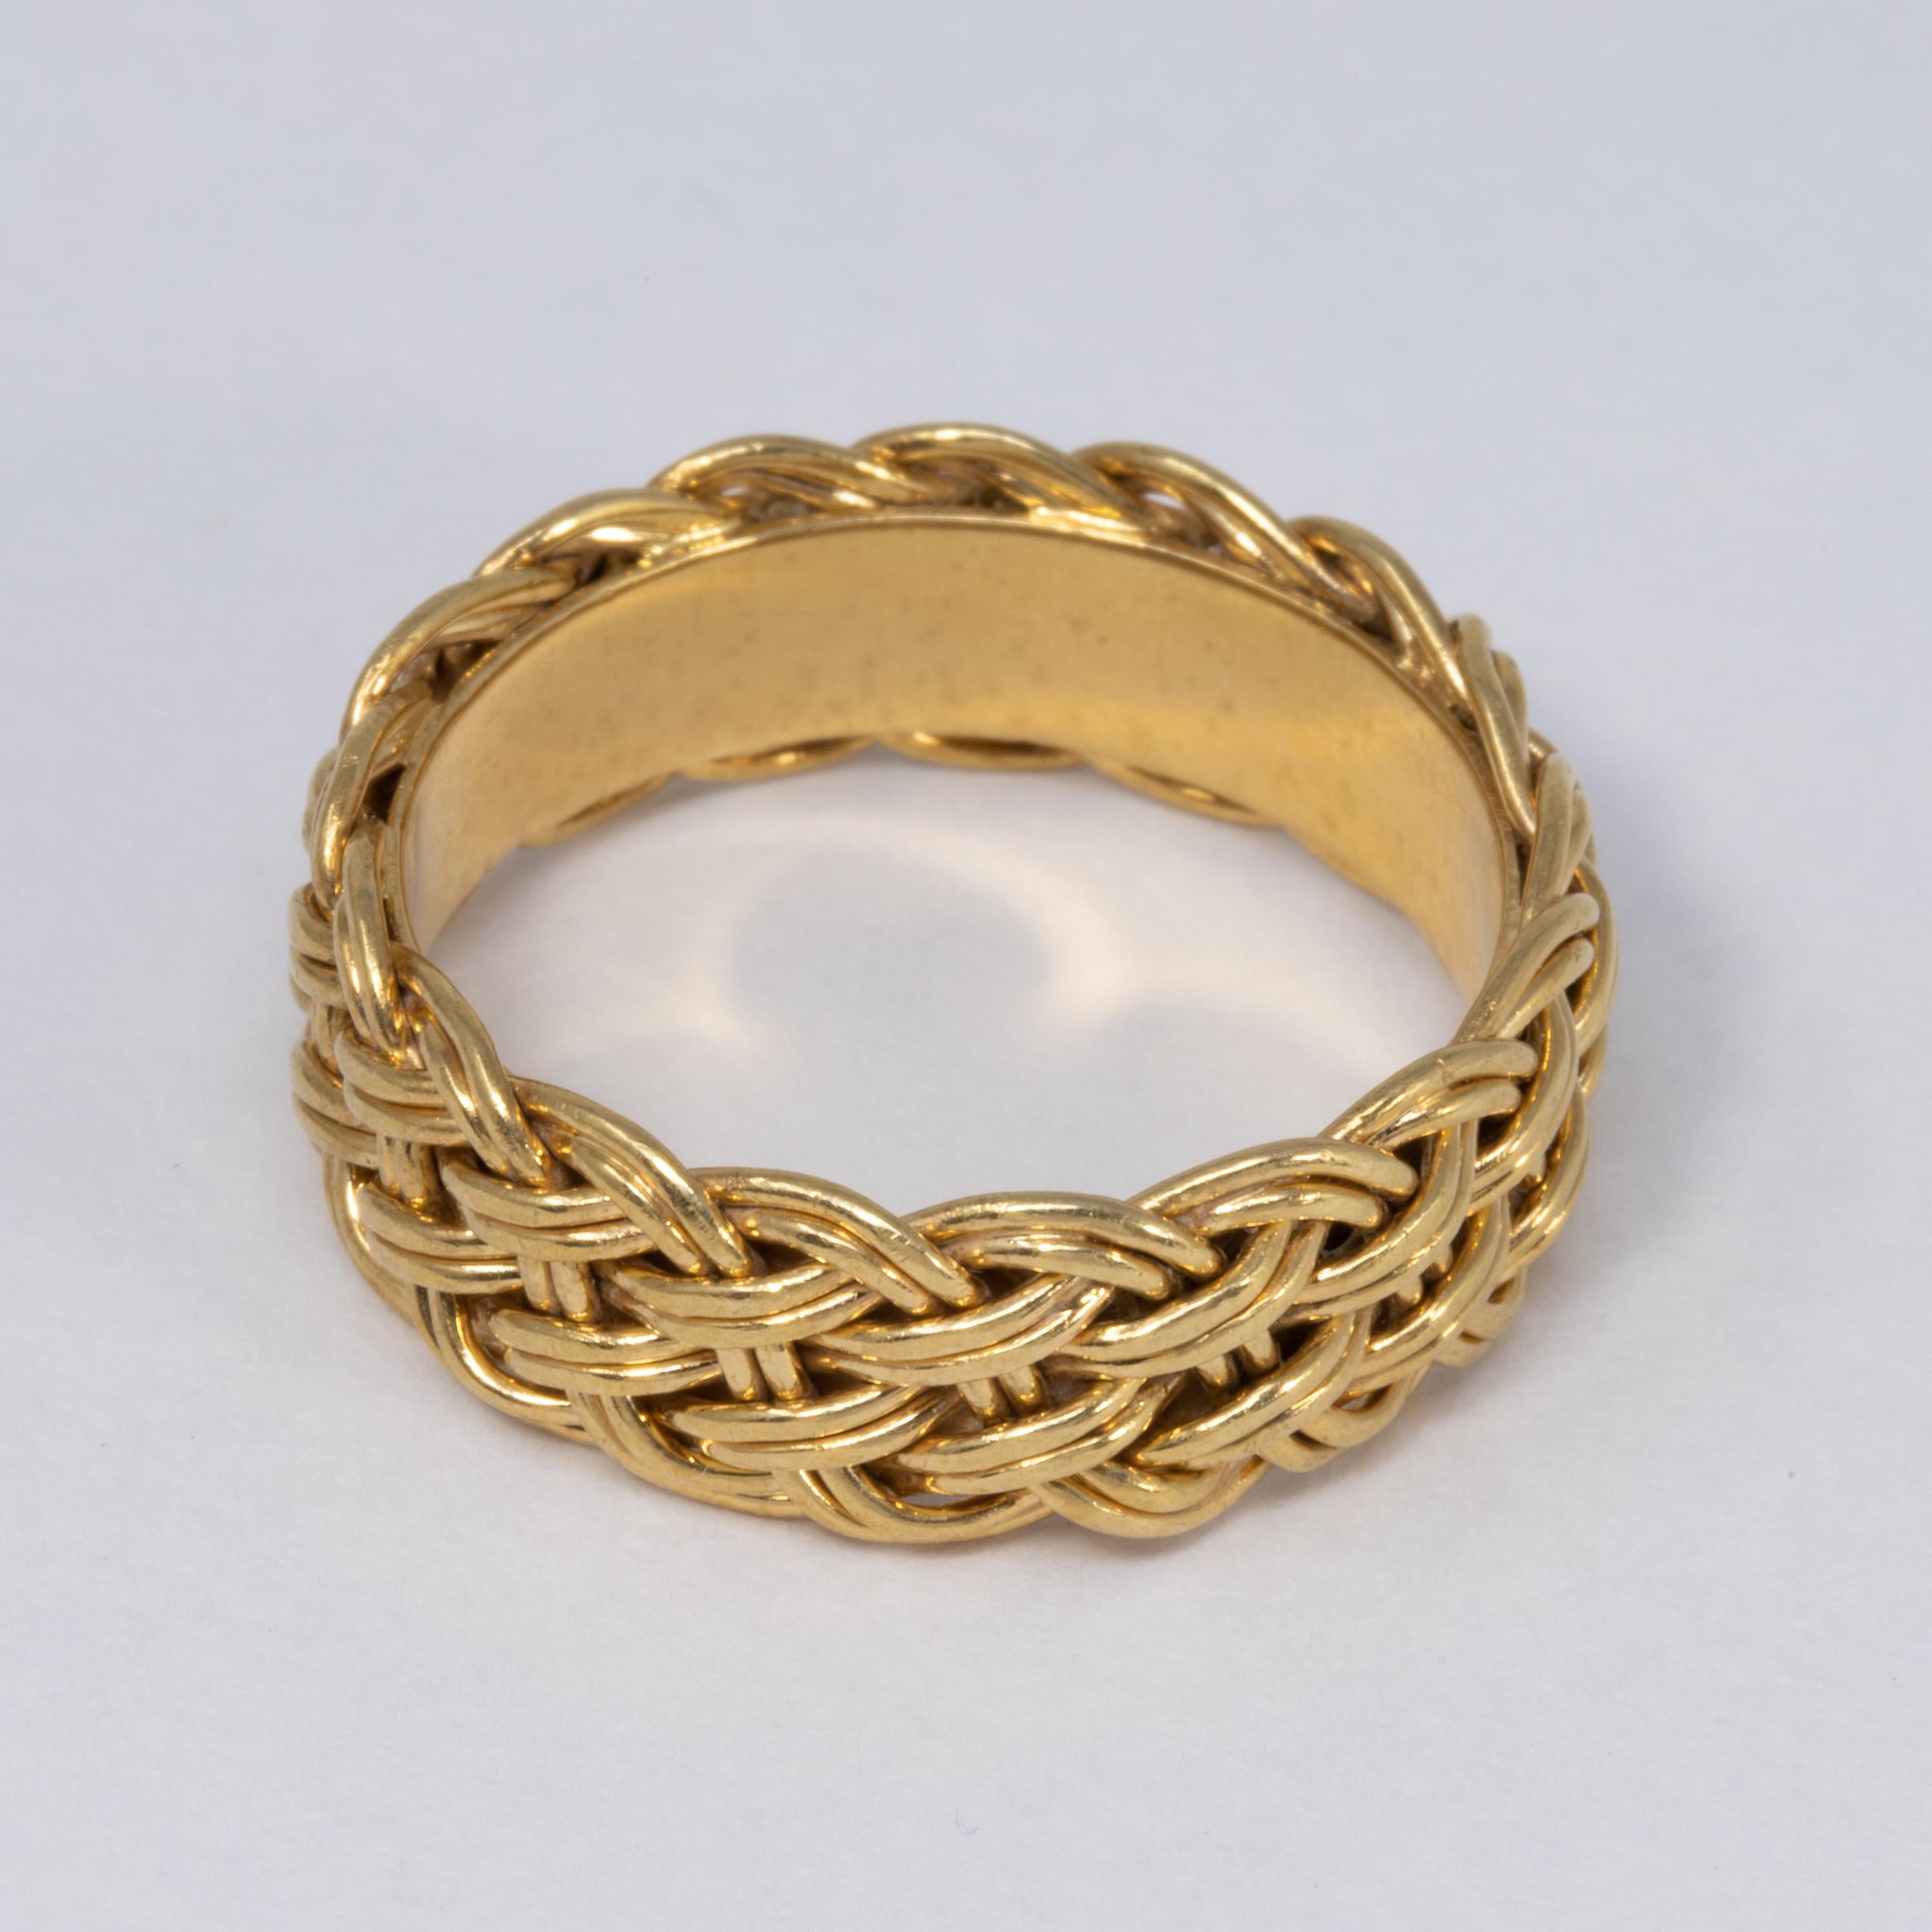 Women's or Men's Vintage 14 Karat Yellow Gold Wedding Band Ring